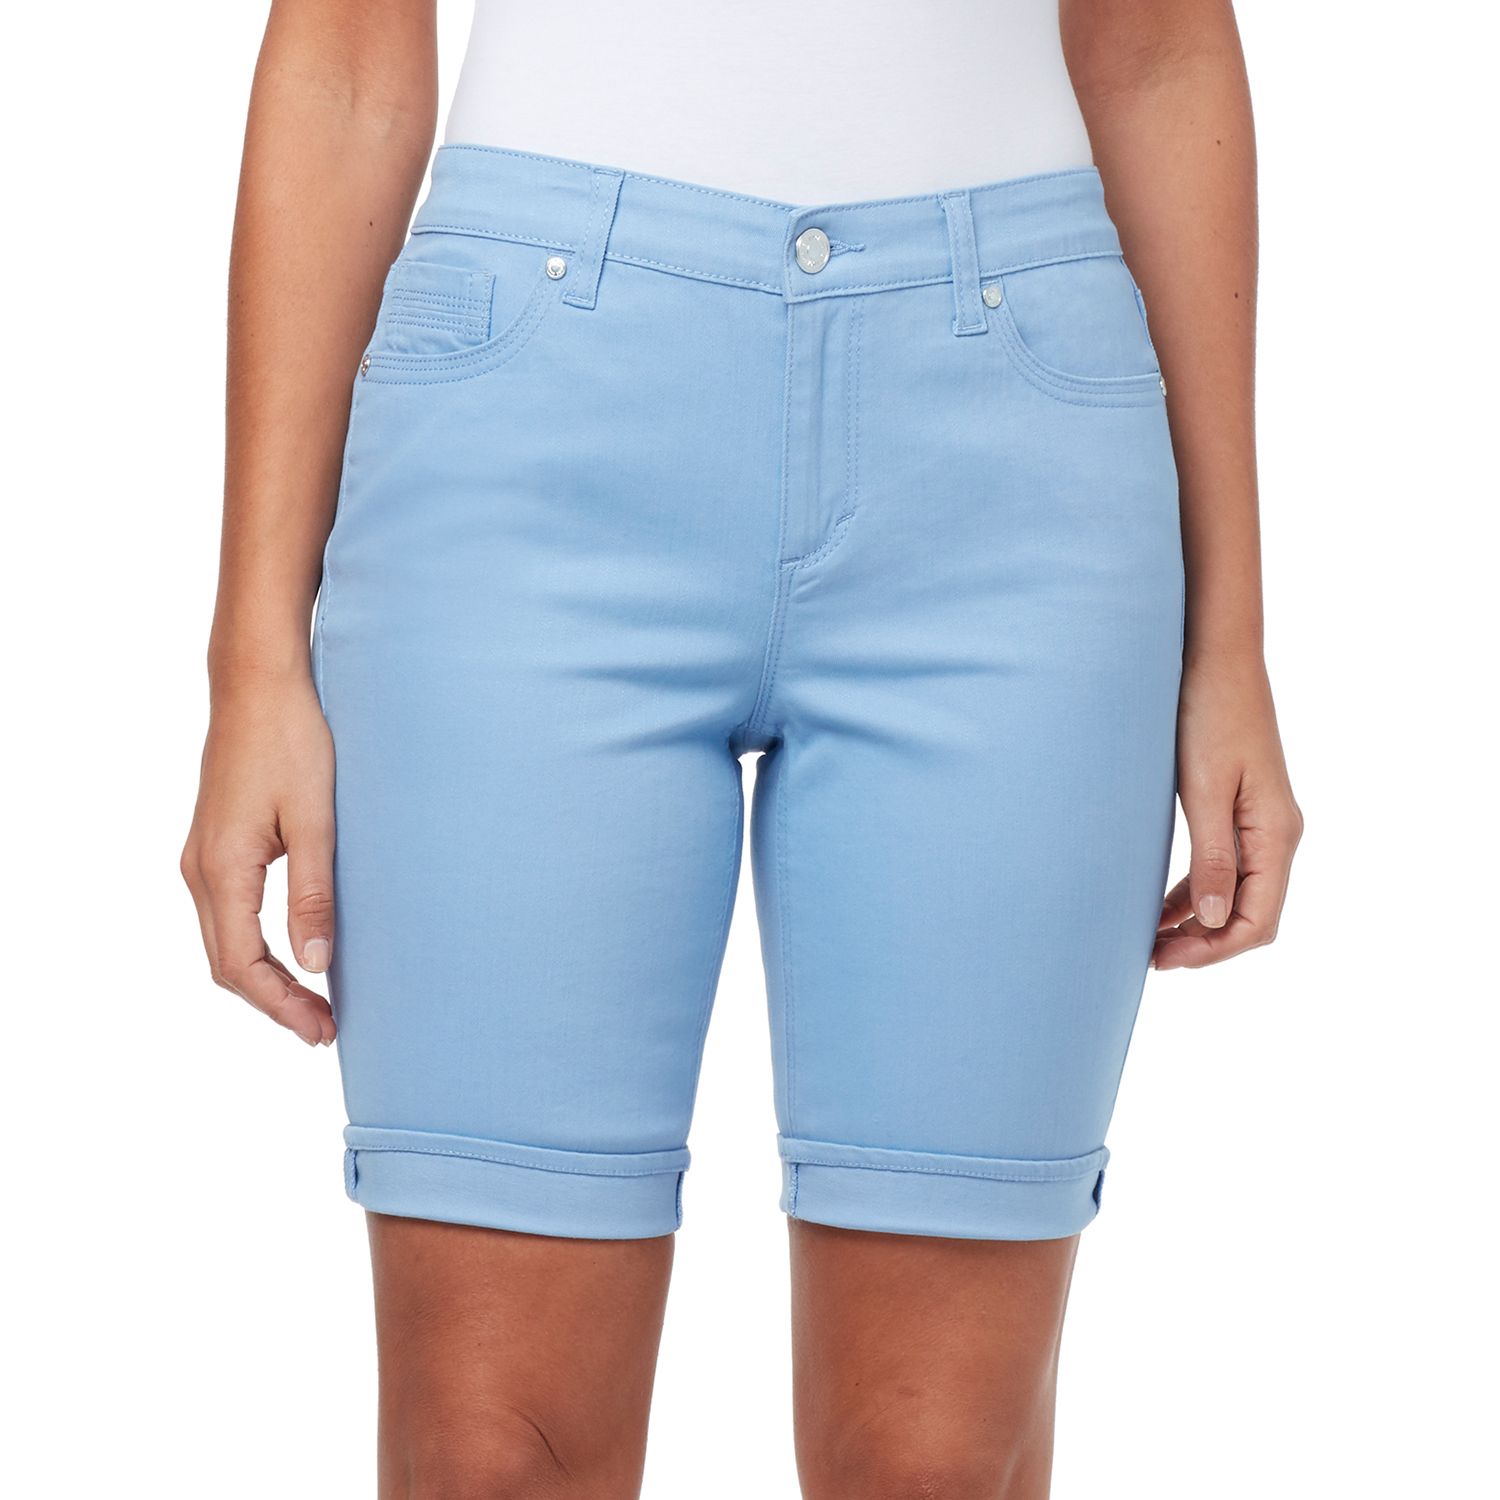 bandolino jean shorts